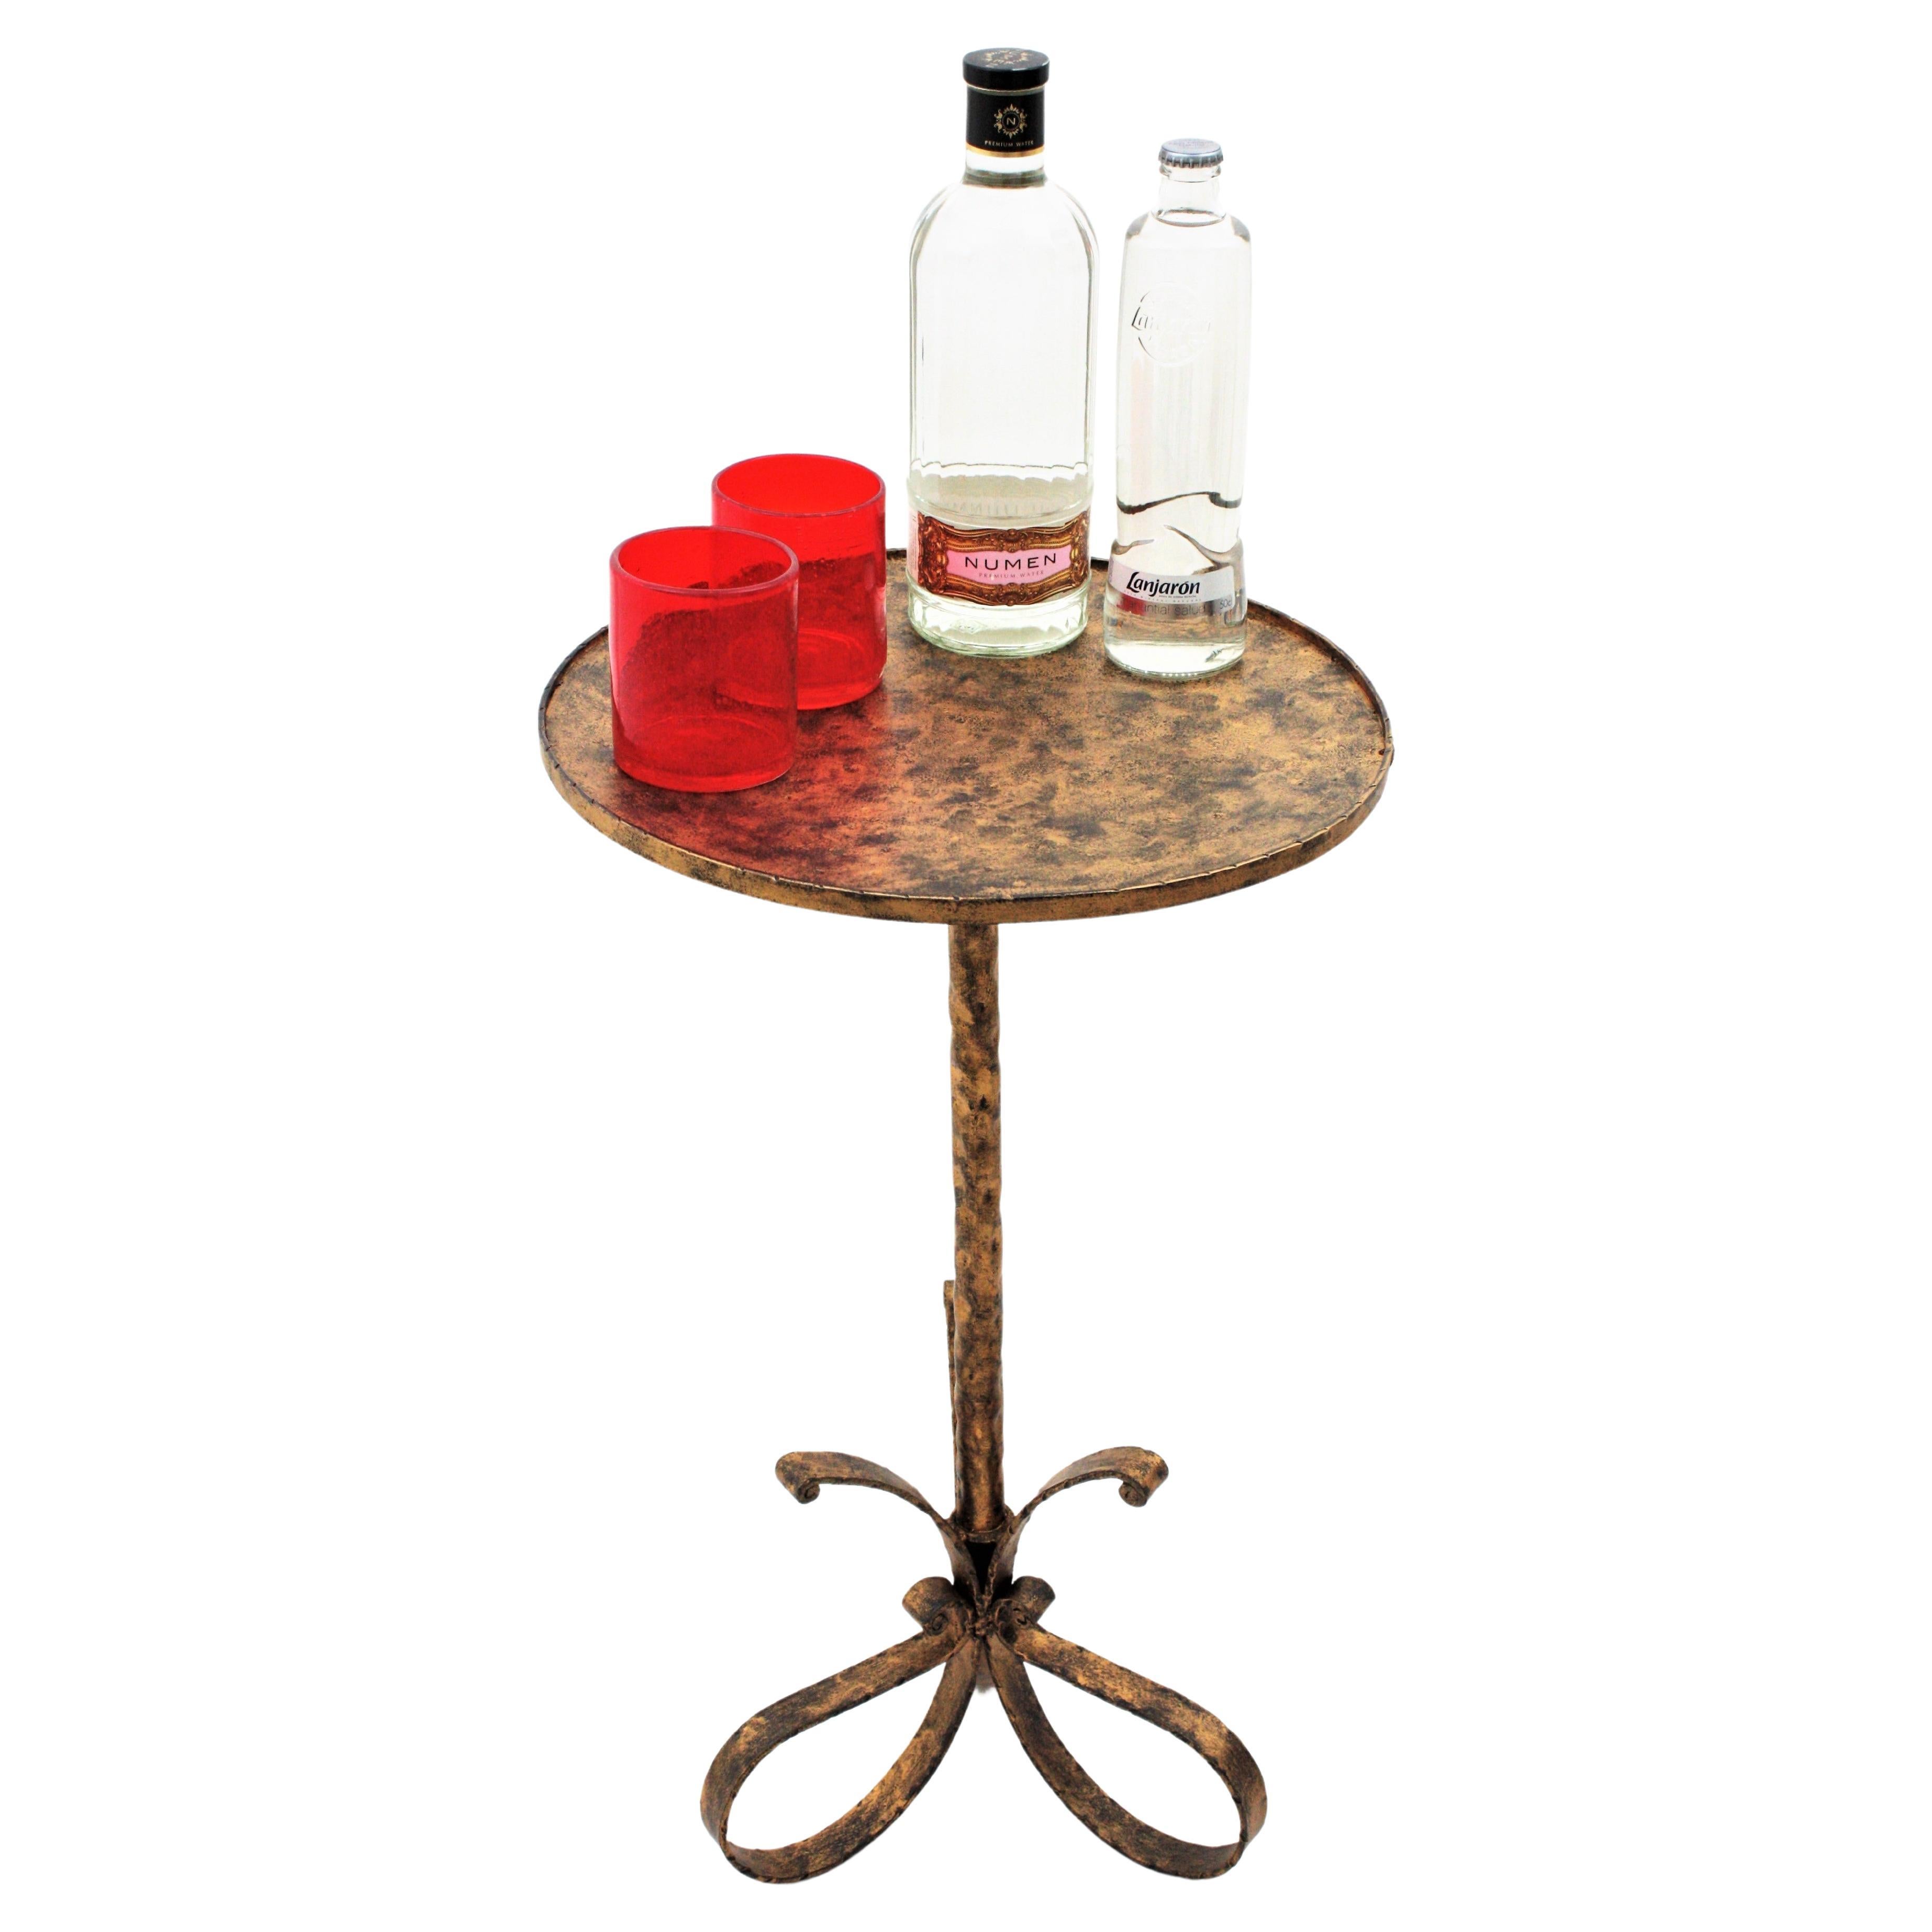 Ravissante table d'appoint ou table à martini patinée et dorée à la main, avec une base à trois pieds en boucle, Espagne, années 1940-1950.
Le plateau est suffisamment grand pour être utilisé comme table basse et repose sur une base en fer en forme